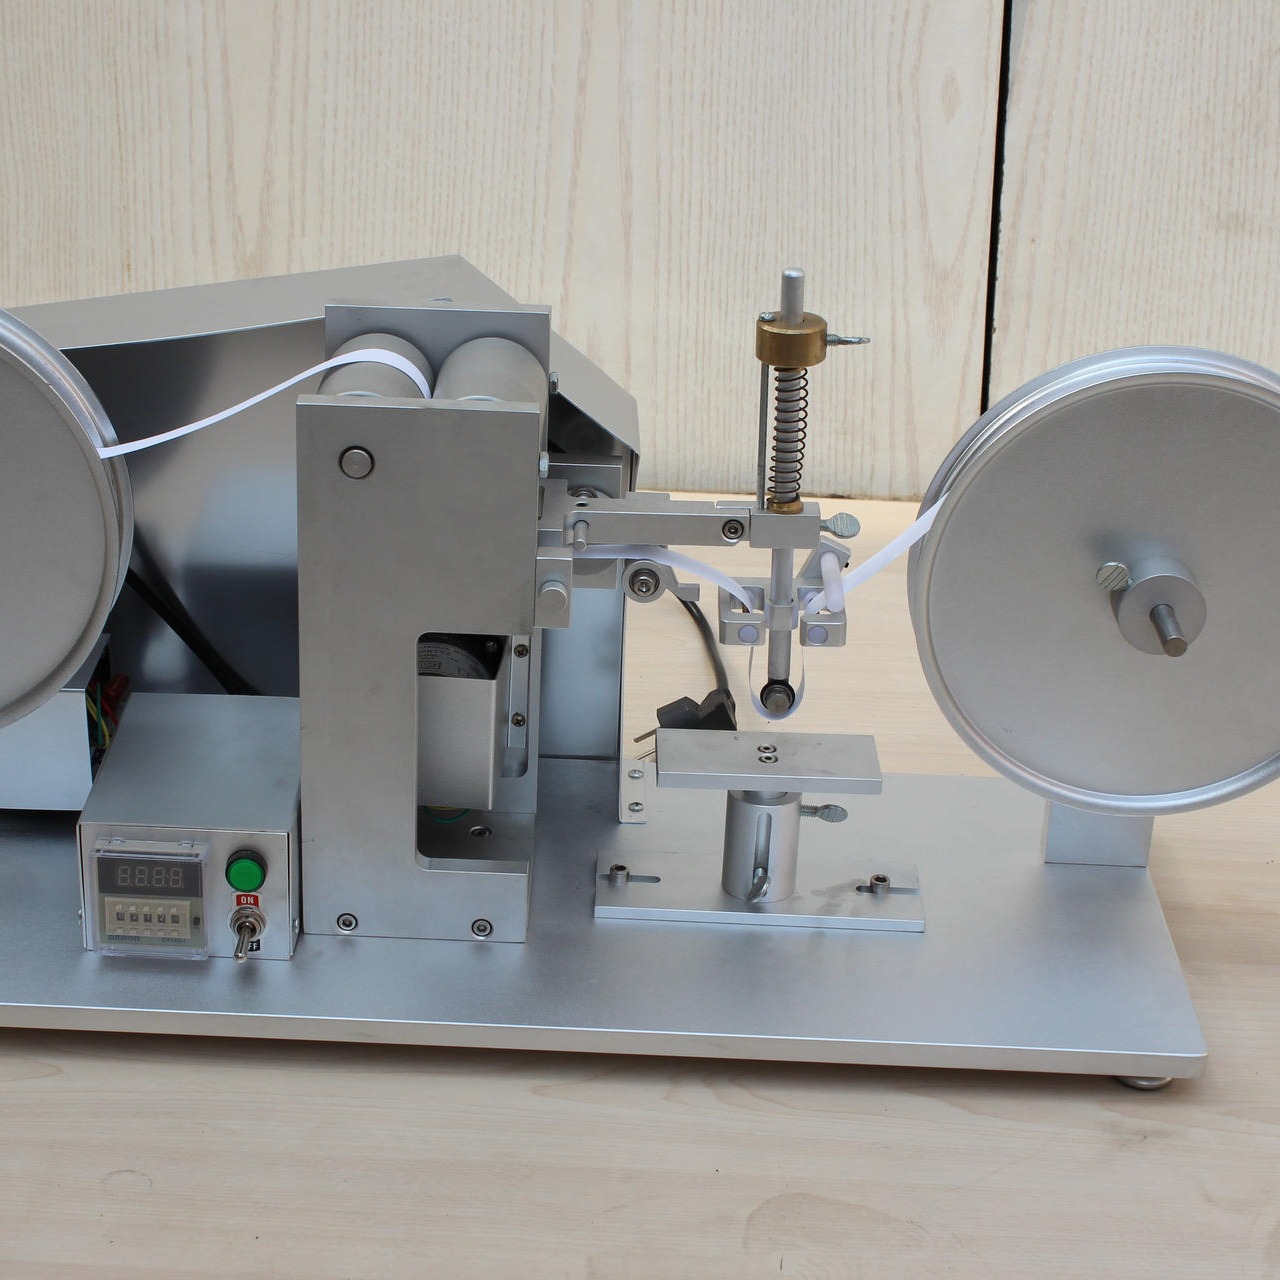 海莱斯HLS-9006 纸带耐磨试验机 用于各种表面涂装(电镀、烤漆、丝印等试品之耐磨擦试验